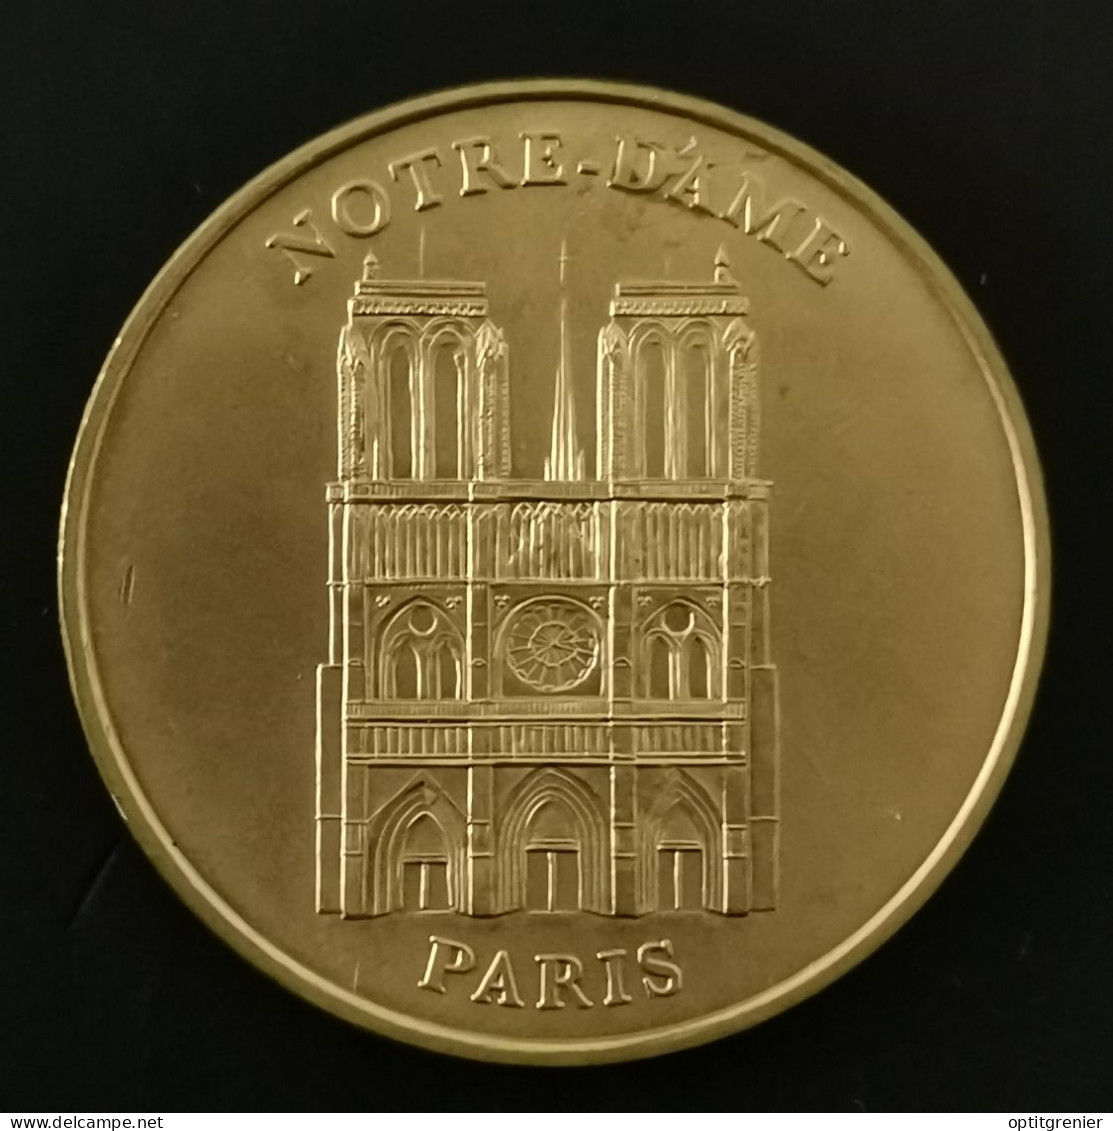 JETON TOURISTIQUE 34 Mm 1998 NOTRE DAME DE PARIS / TOKEN - Zonder Datum